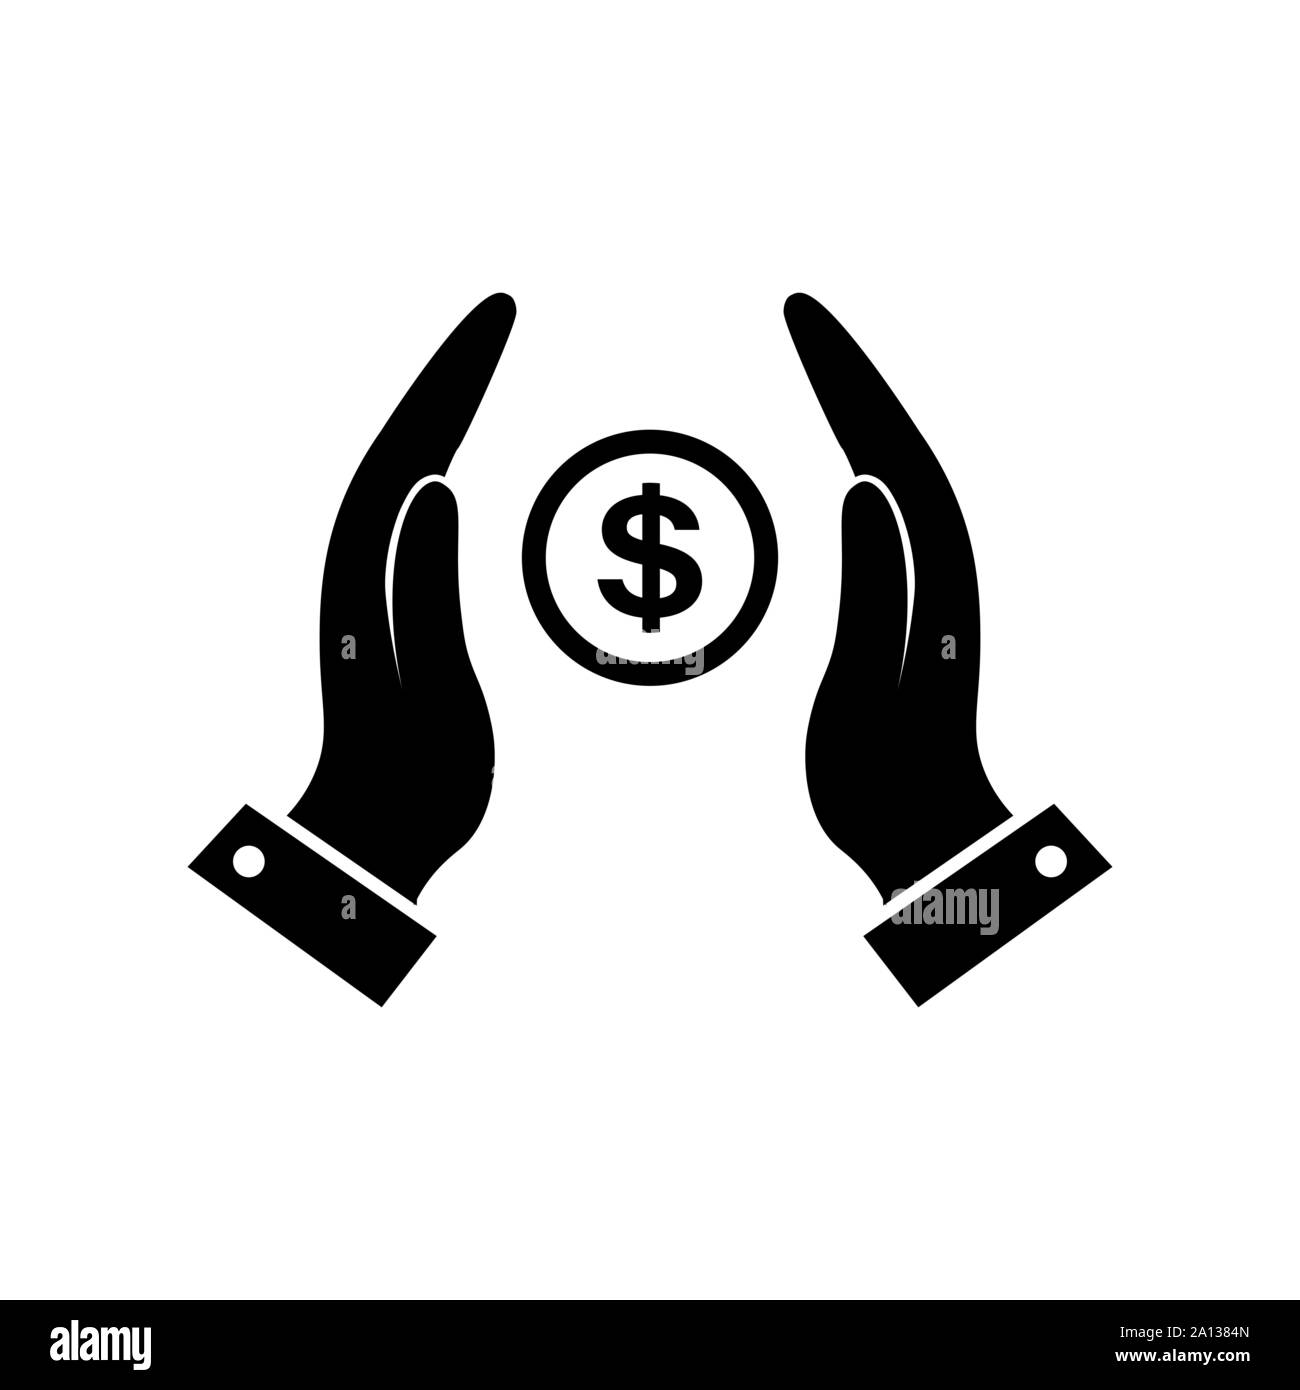 Icona di denaro vettoriale nelle mani in nero. Illustrazione Vettoriale